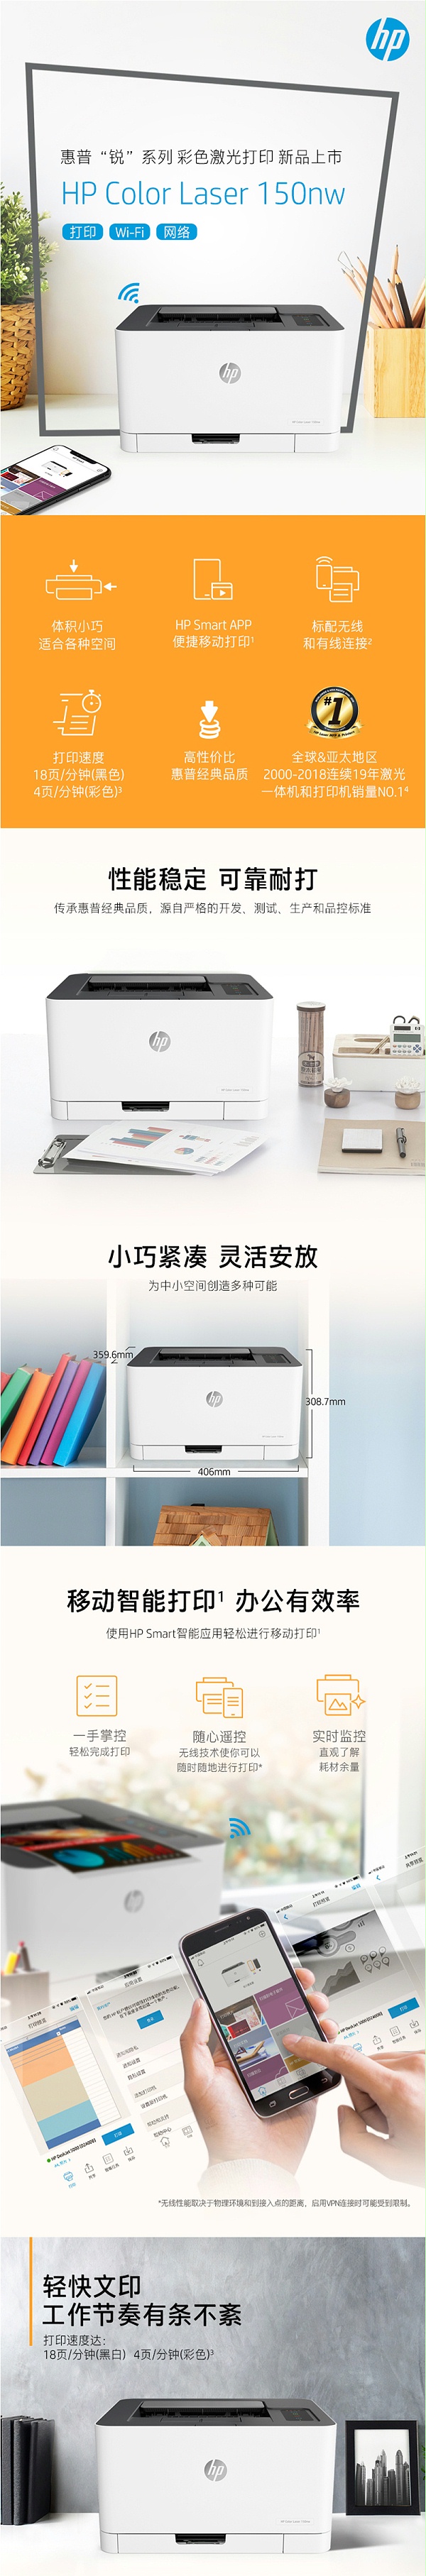 HP 1020w无线型 黑白激光打印机